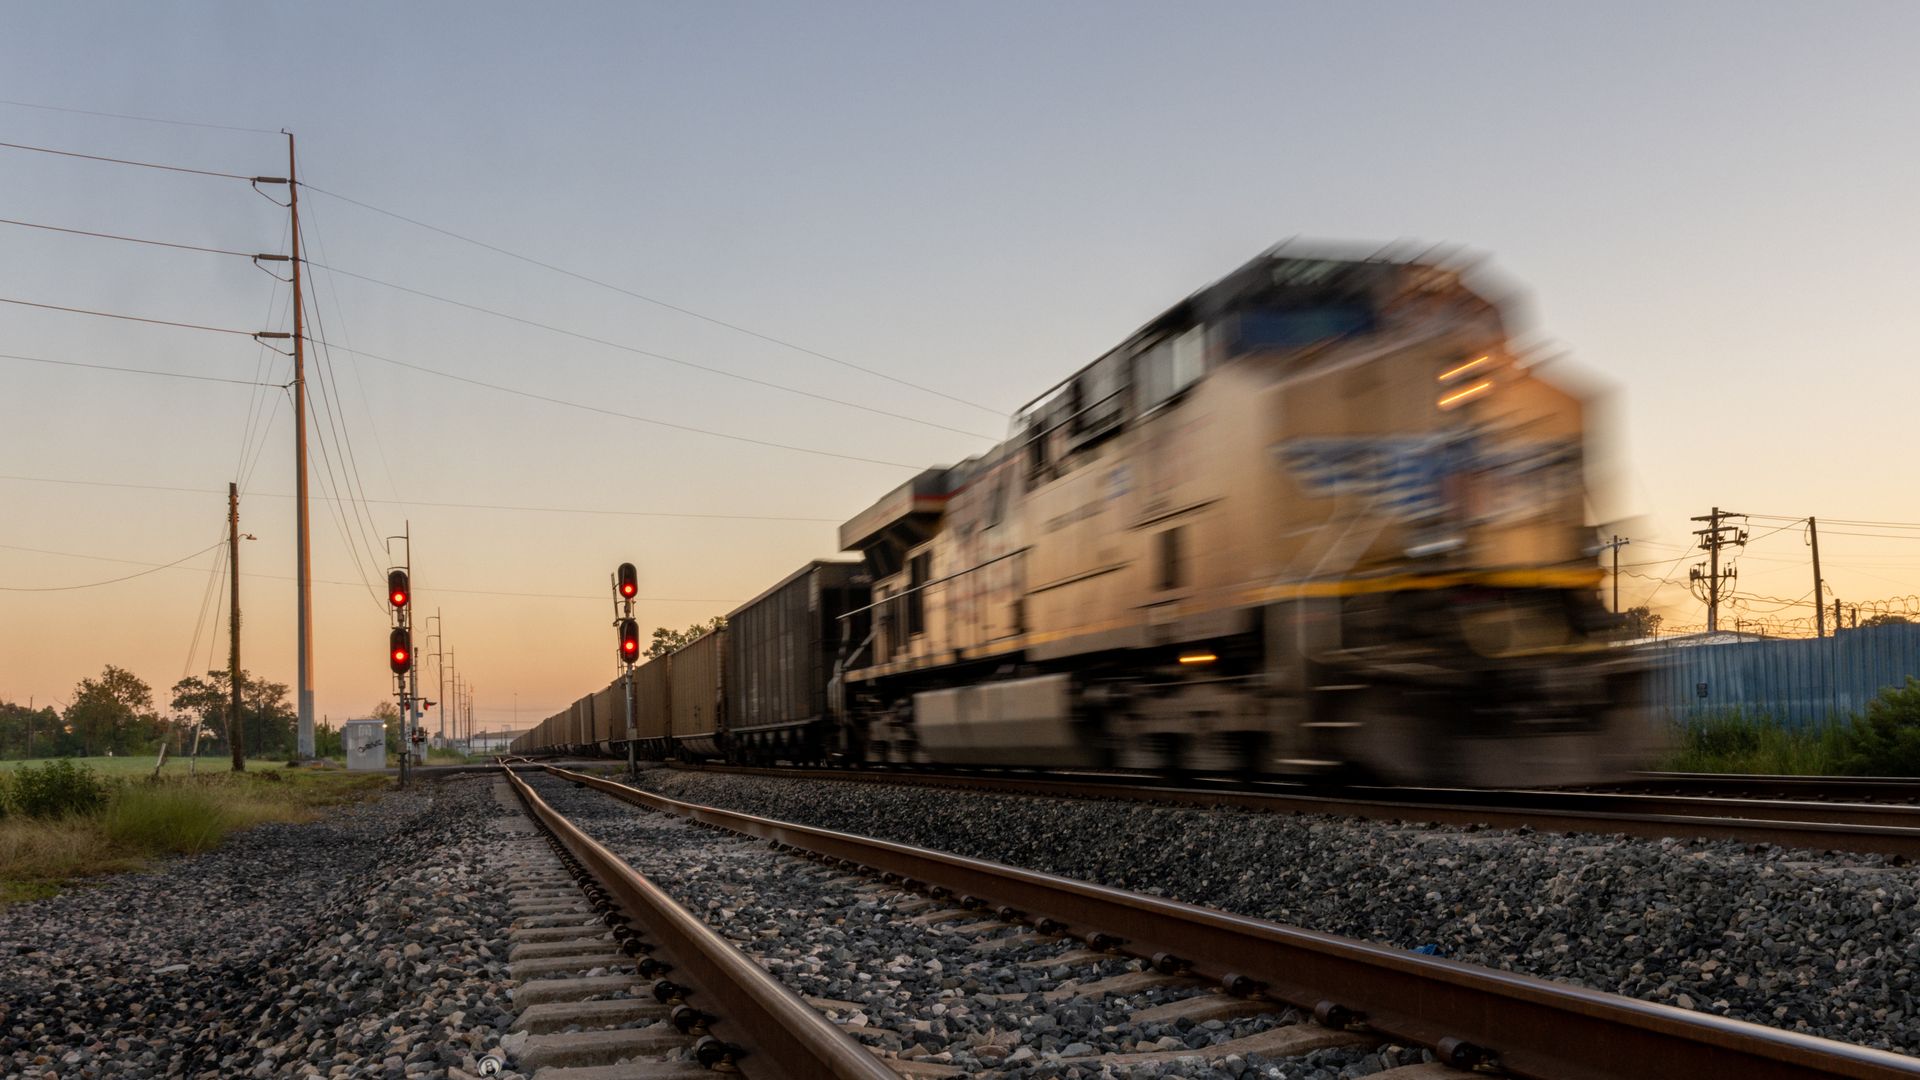  A freight train travels through Houston on September 14, 2022 in Houston, Texas